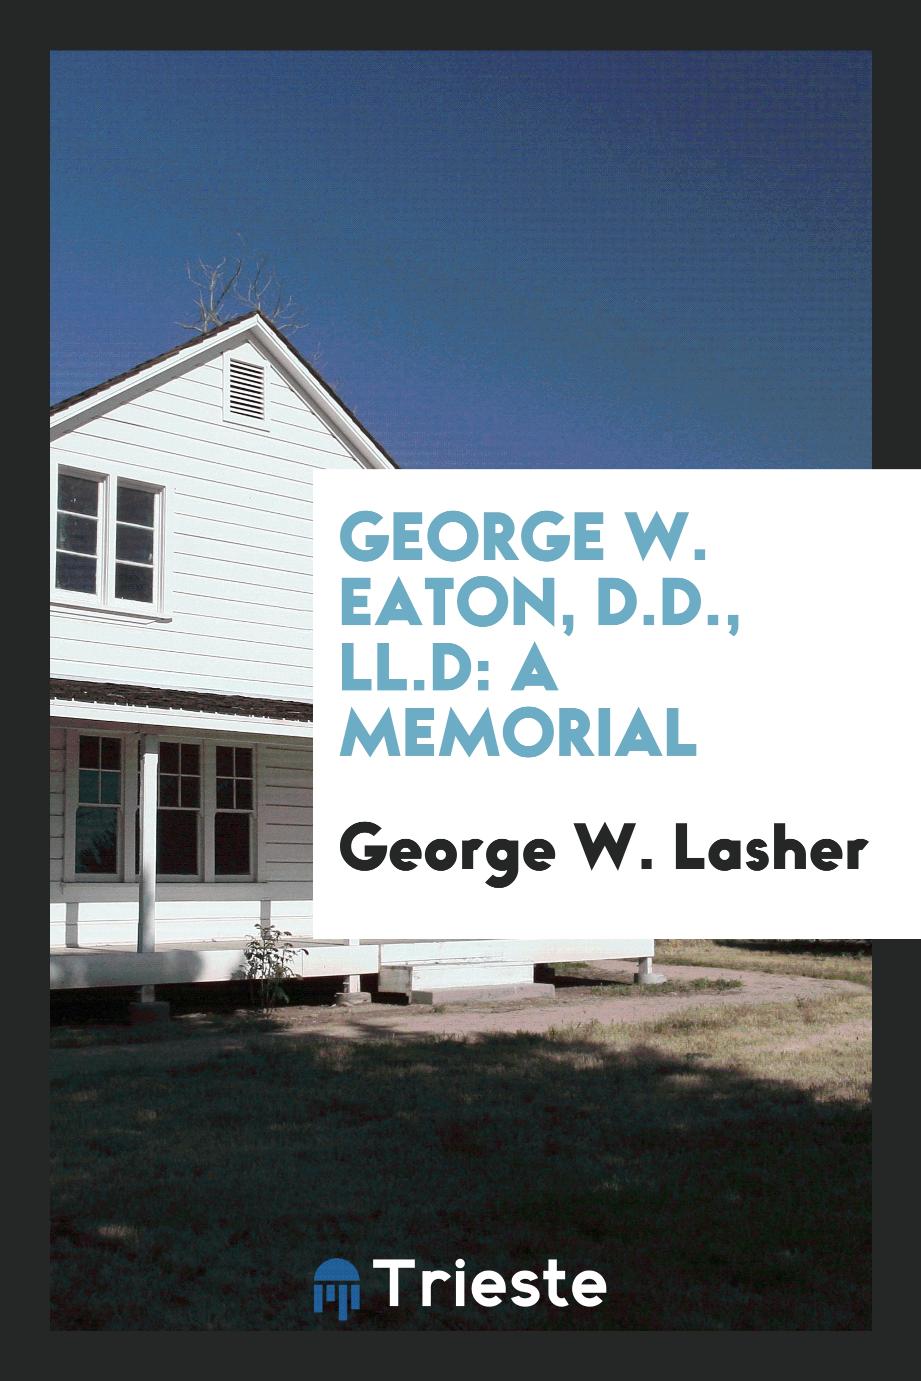 George W. Eaton, D.D., LL.D: a memorial